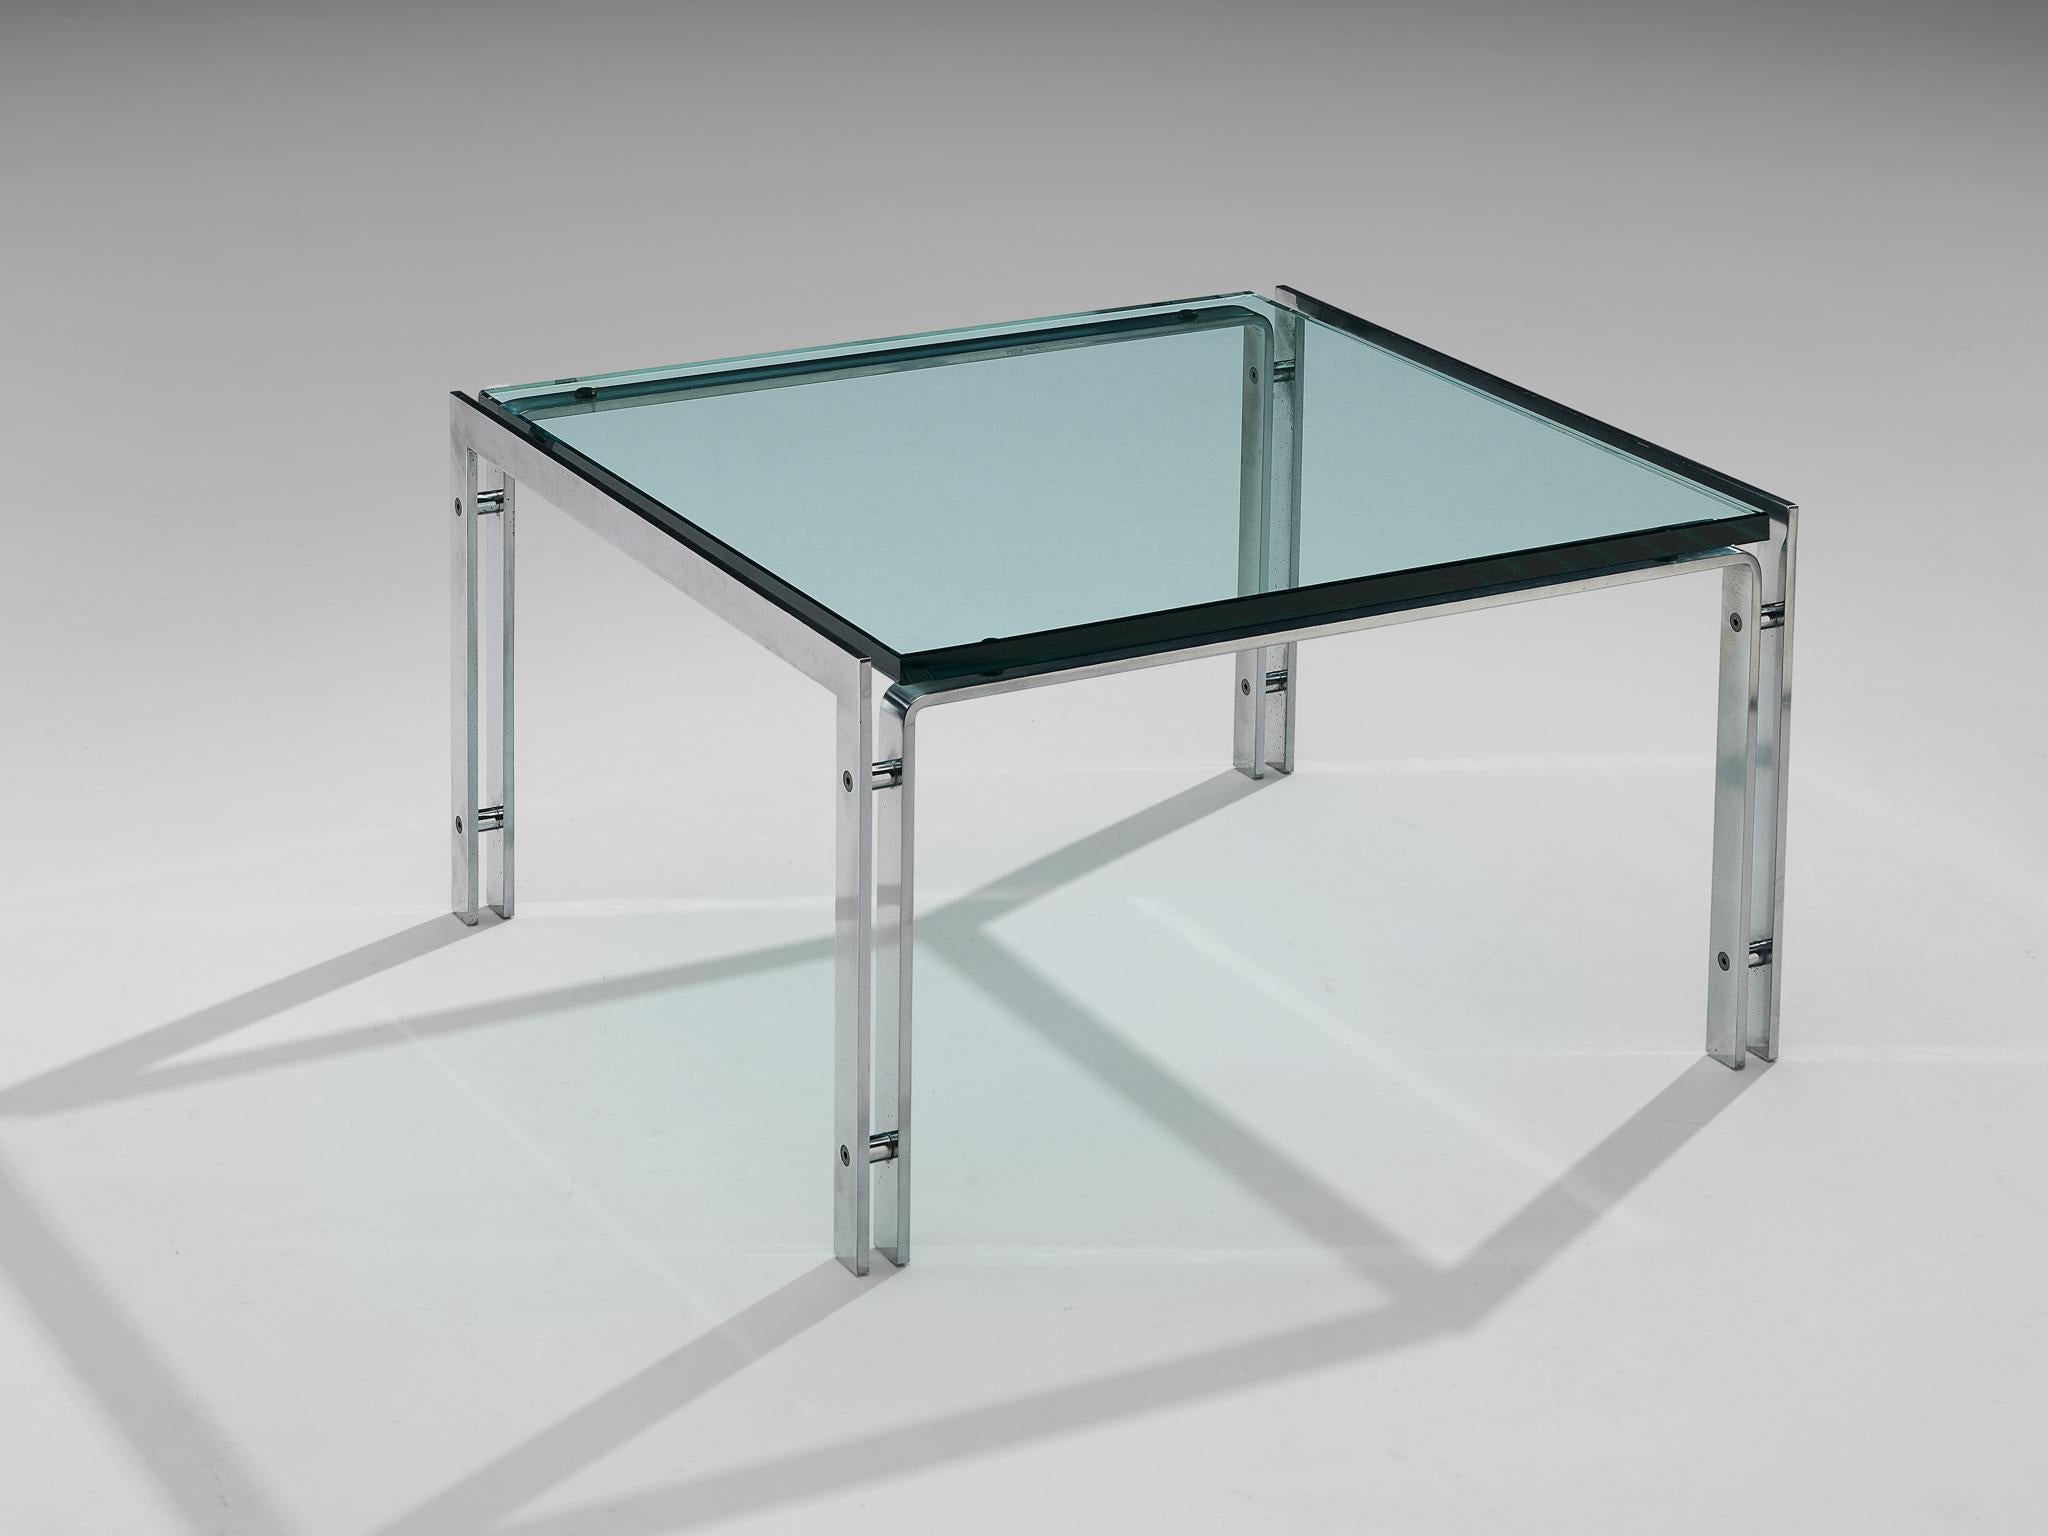 Table basse, acier et verre, Pays-Bas, années 1970

Table basse moderniste en acier chromé et verre. Ce design affiche des caractéristiques sobres et directes grâce à la combinaison des matériaux et au design des pieds. La table se compose de quatre